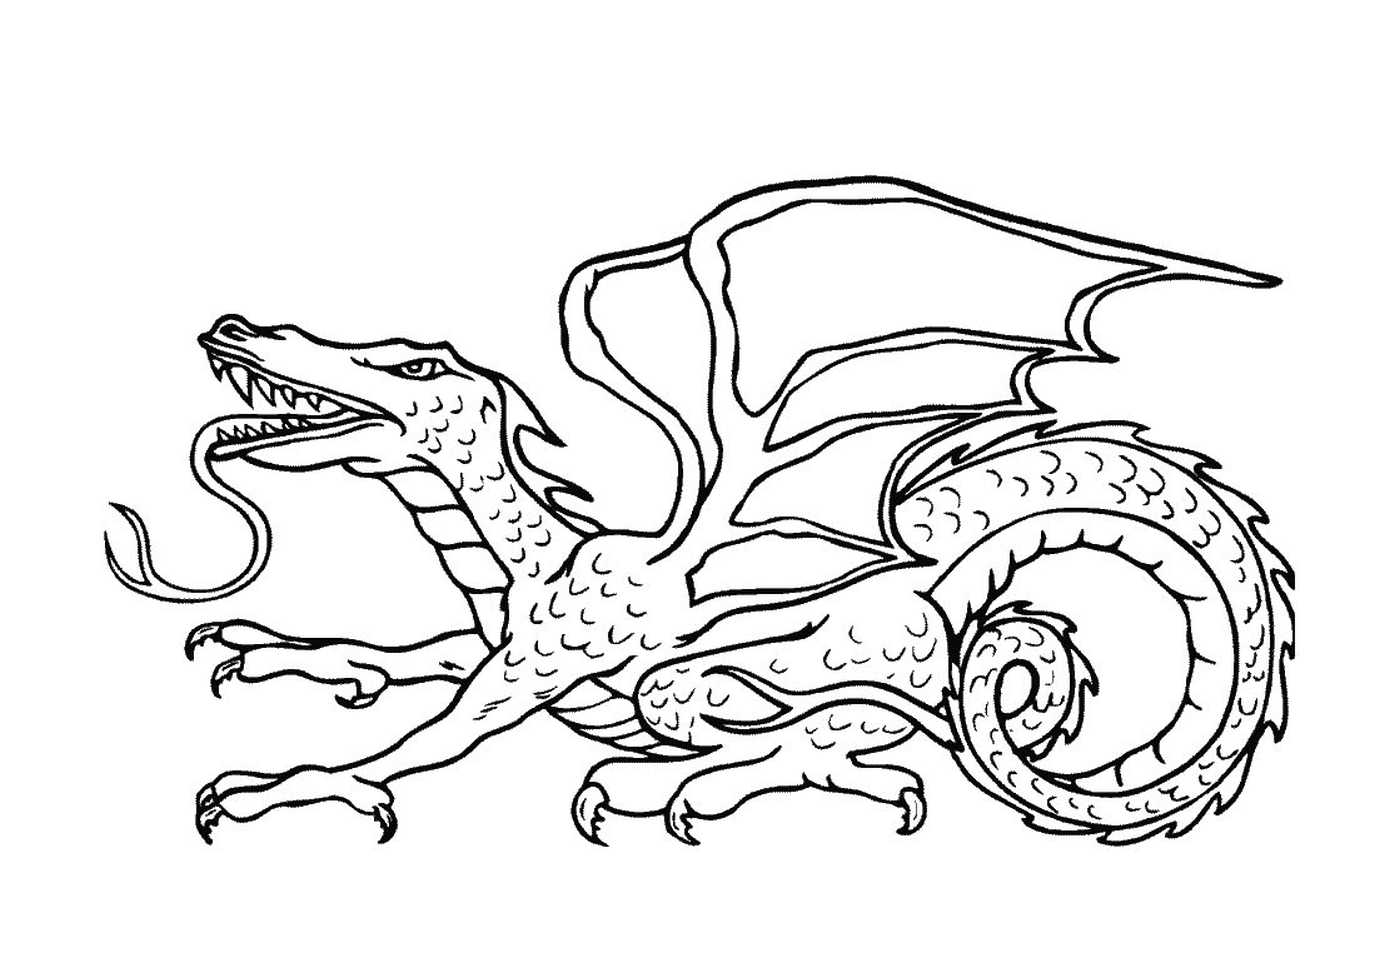  An adult dragon 